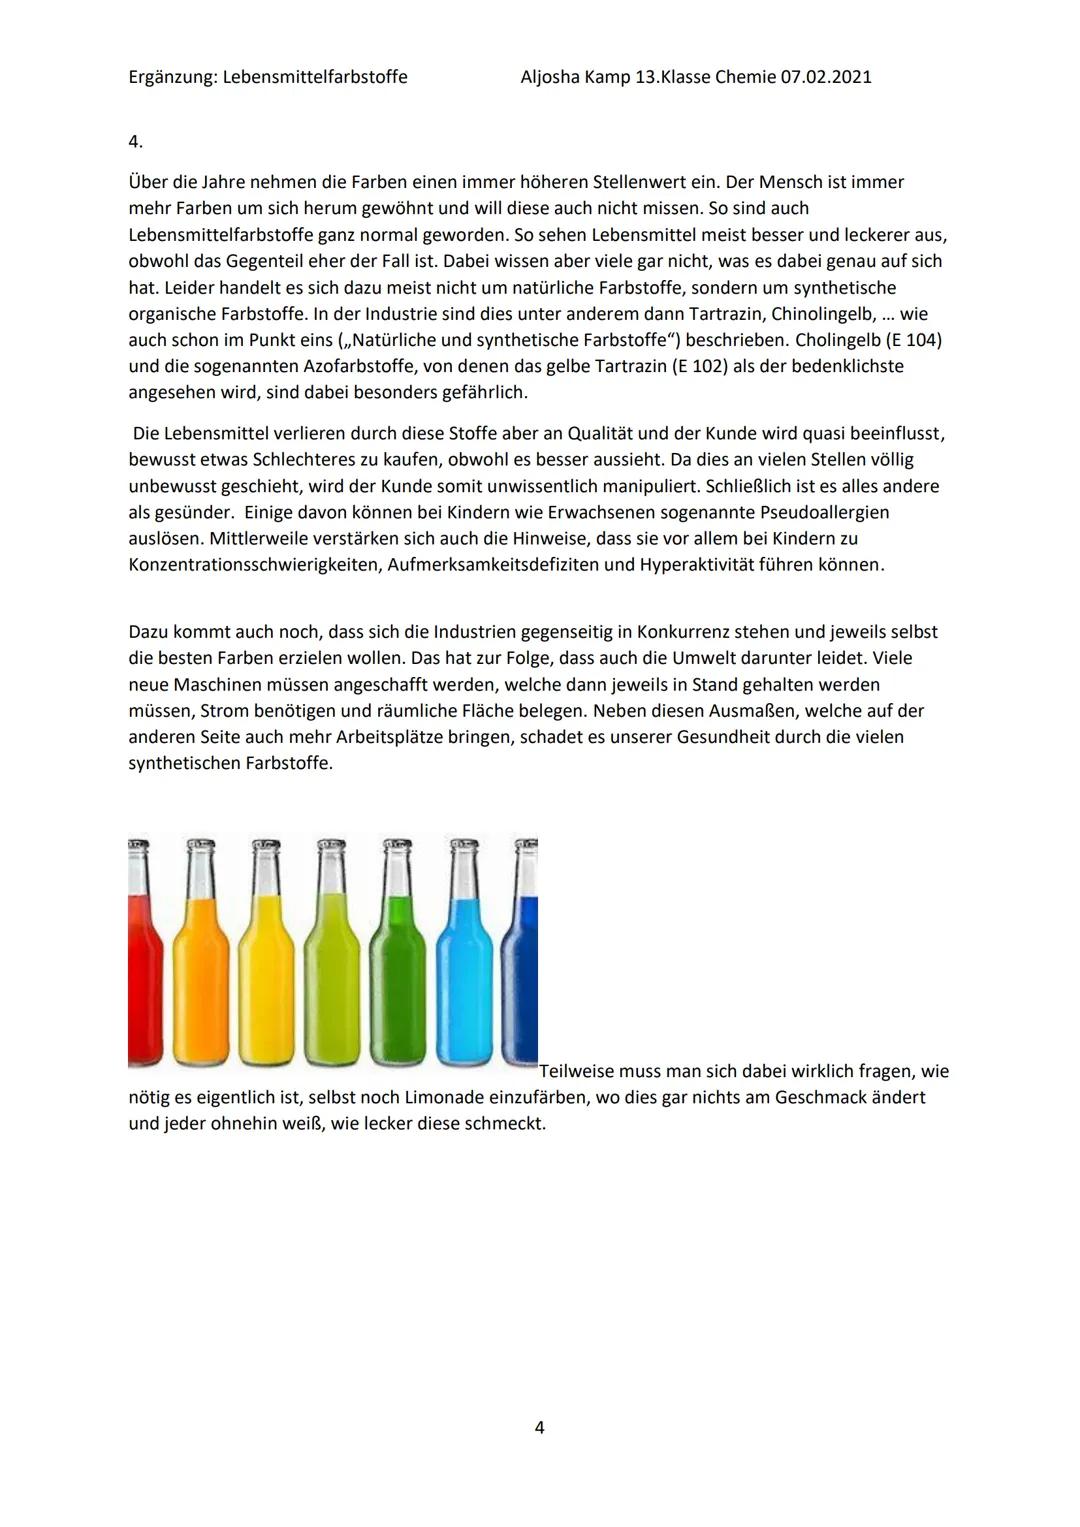 Lebensmittelfarbstoffe
1. Natürliche und synthetische Farbstoffe
2 Geschichte der Lebensmittelfärbung
3. Einteilung in E-Nummern
4. Nebenwir